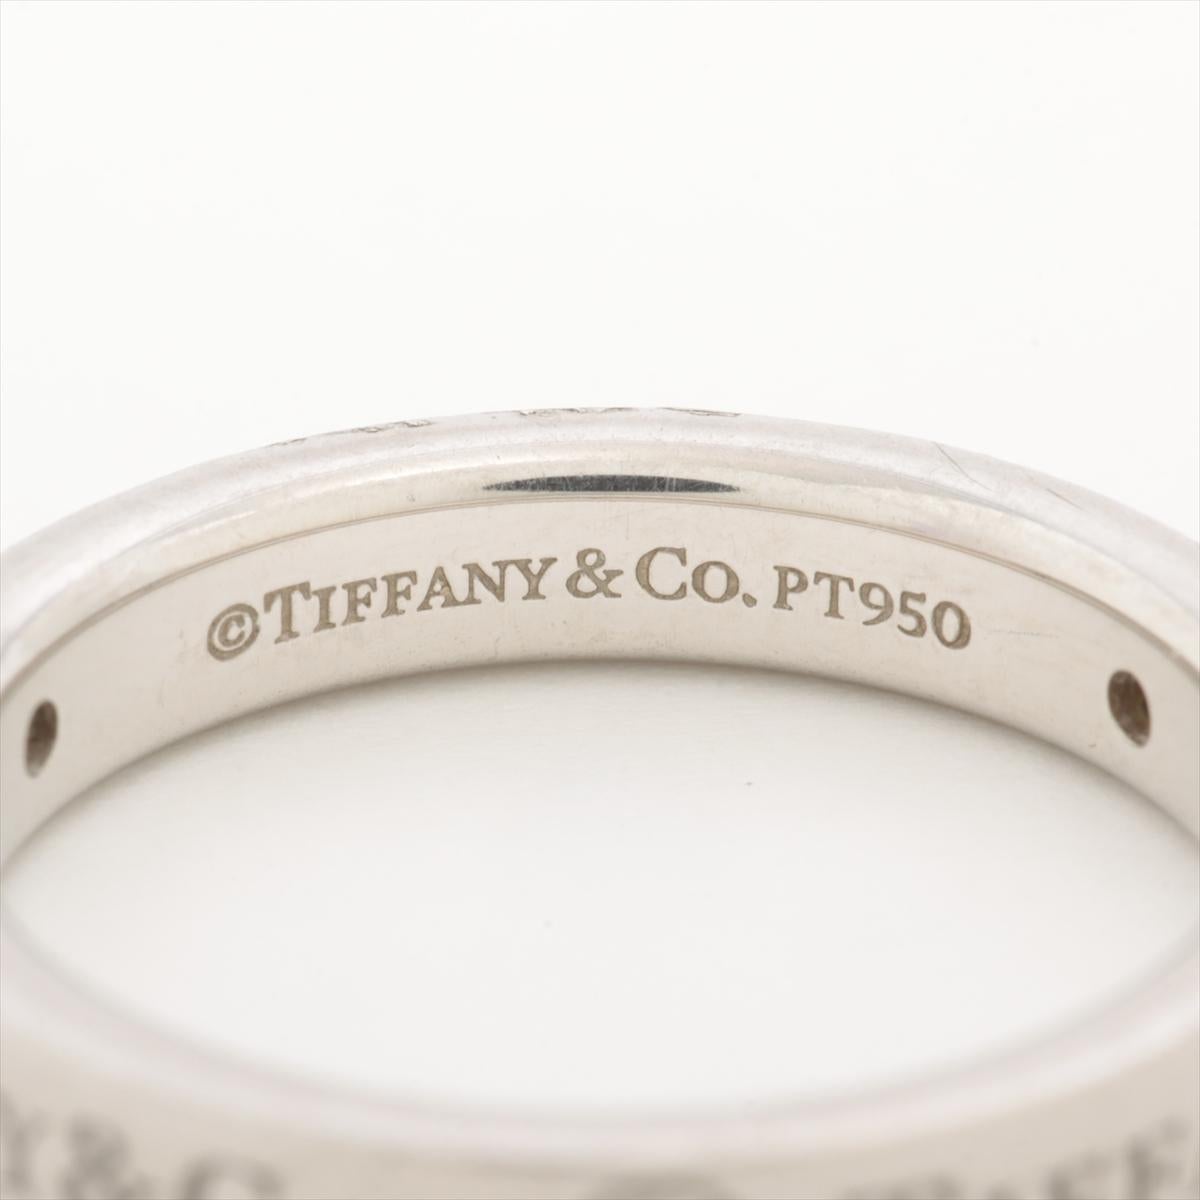 Die Tiffany & Co. Flat Band Diamond Ring eine faszinierende Mischung aus modernem Design und zeitloser Eleganz. Die flache Silhouette des Rings ist mit exquisiten Diamanten verziert, die ein fesselndes Stück schaffen, das Raffinesse ausstrahlt. Das